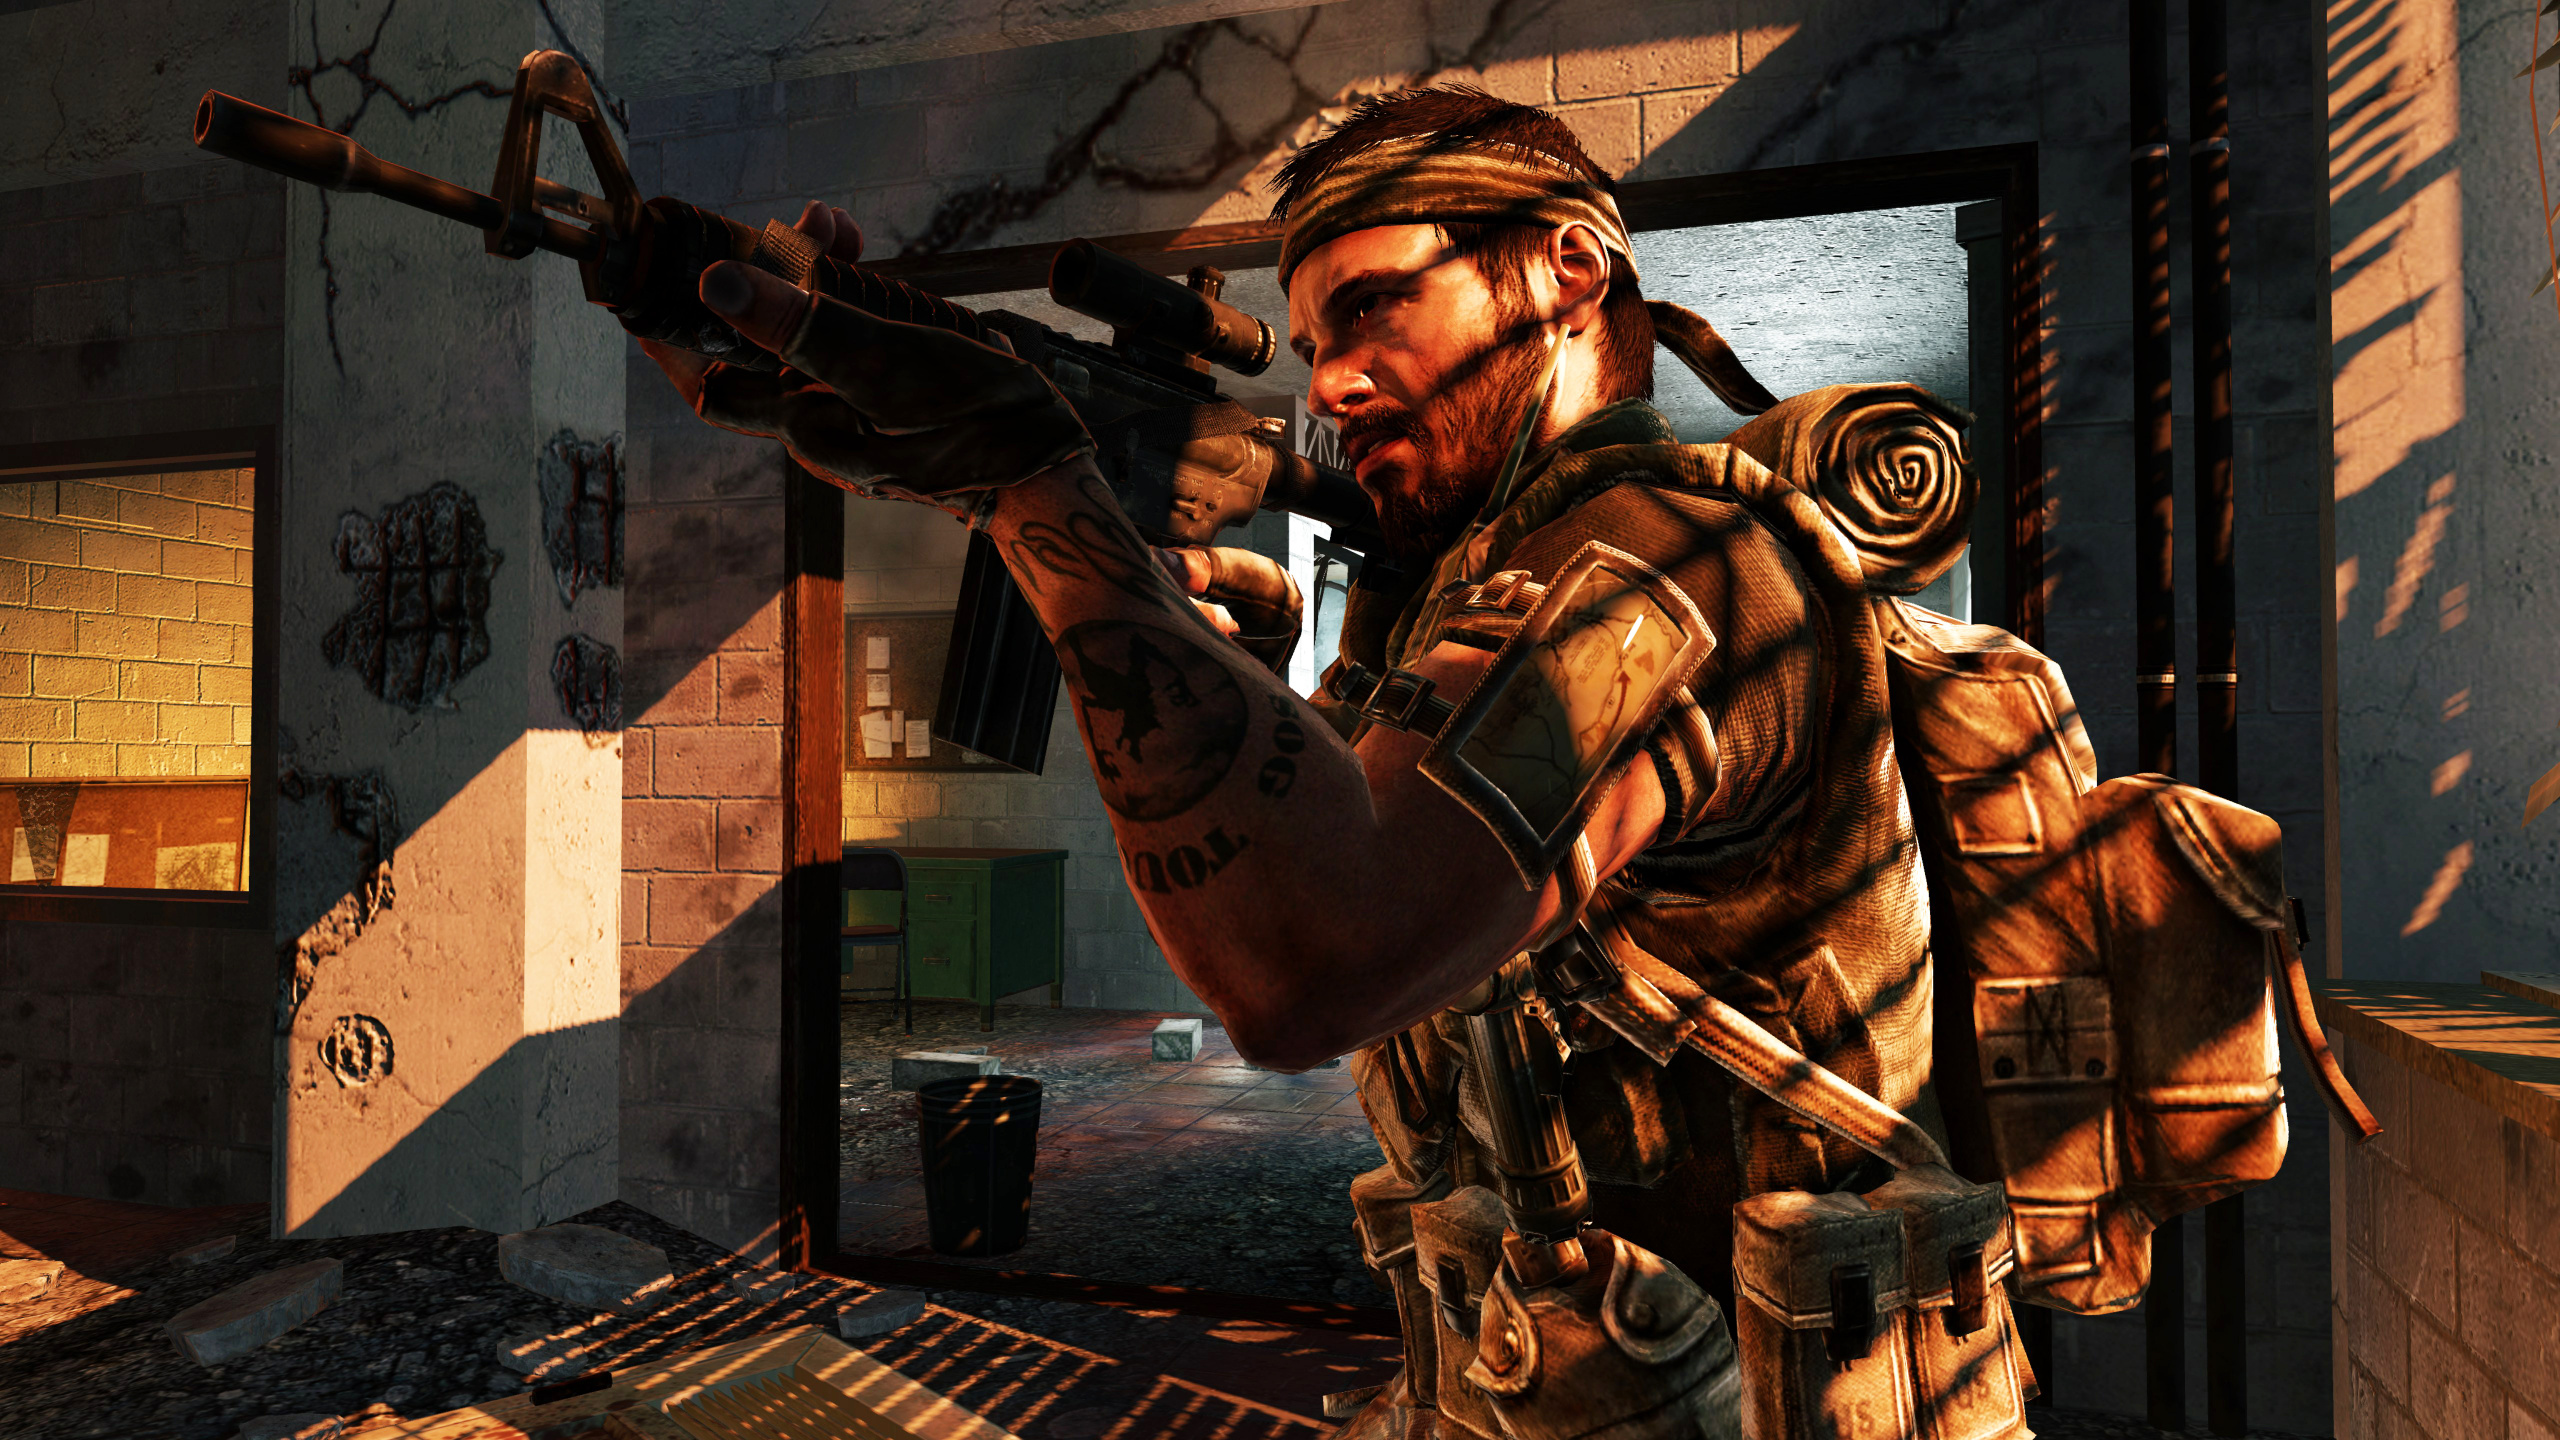 使命召唤黑色行动ii, 呼叫的职责的现代战争的2, Xbox360, Ps3游戏机, 改动 壁纸 2560x1440 允许